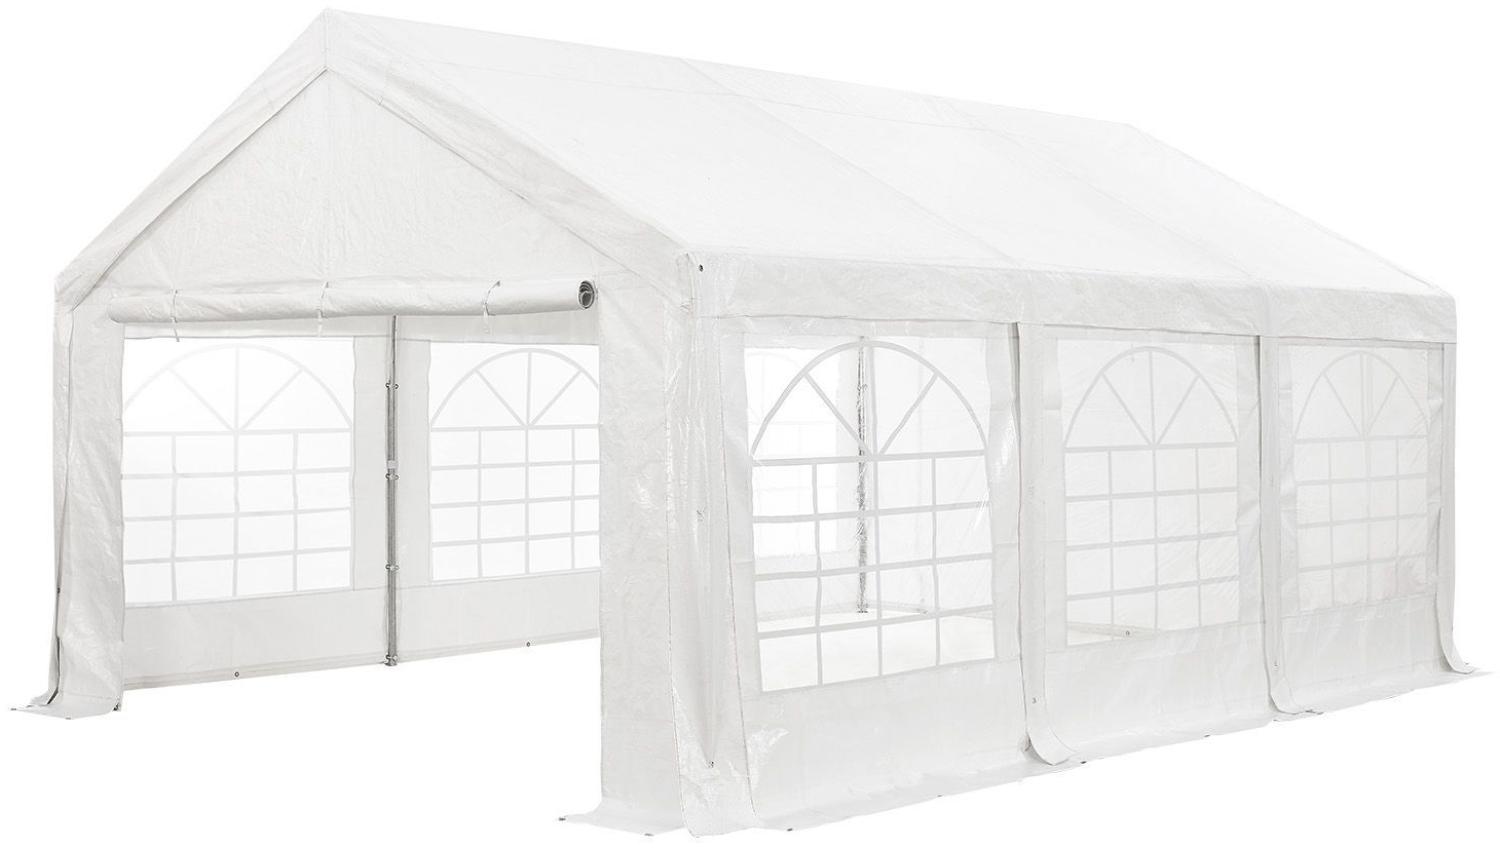 Juskys Partyzelt Gala 3 x 6 m - UV-Schutz Plane, flexible Seitenwände - Pavillon stabil, groß - Outdoor Party Garten - Zelt Festzelt Weiß Bild 1